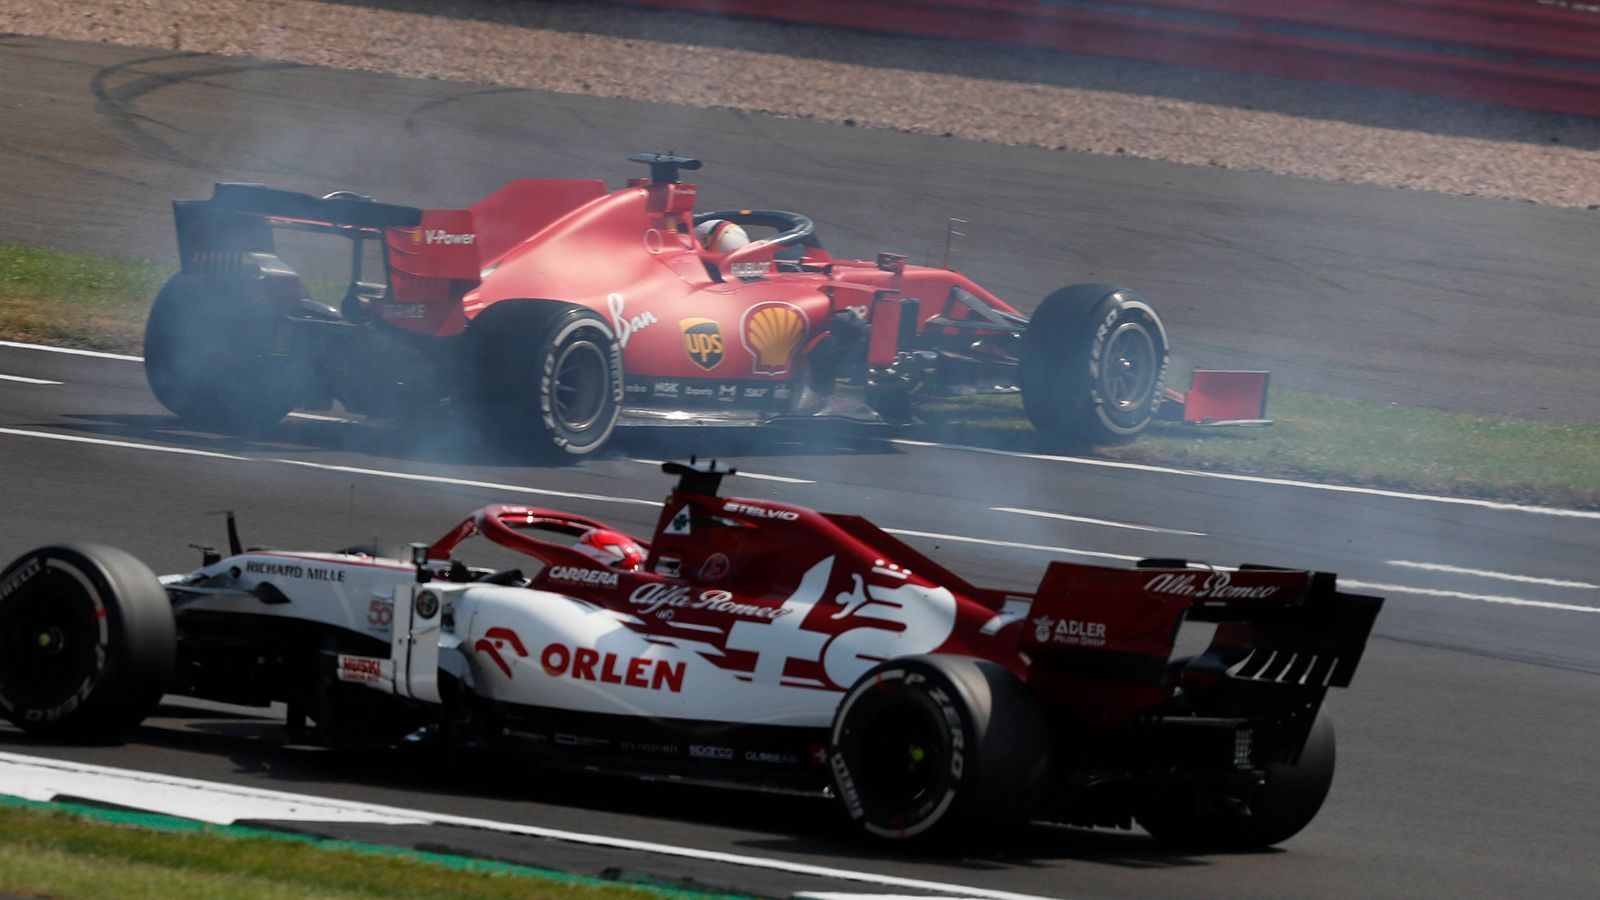 
                <strong>VERLIERER: Sebastian Vettel</strong><br>
                Ein Alptraum-Rennen für den scheidenden Ferrari-Piloten. Bereits kurz nach dem Start dreht sich Vettel aufgrund eines eigenen Fahrfehlers. In der Mitte des Rennens ruft ihn das Team in die Box. Der 33-Jährige erwidert, seine Reifen wären noch in gutem Zustand, seine Ingenieure bleiben stur. Vettel fährt auf P12 ins Ziel und schimpft am Ende durch den Funk: "Ihr habt's verbockt!" Schlimmer kann es kaum noch werden.
              